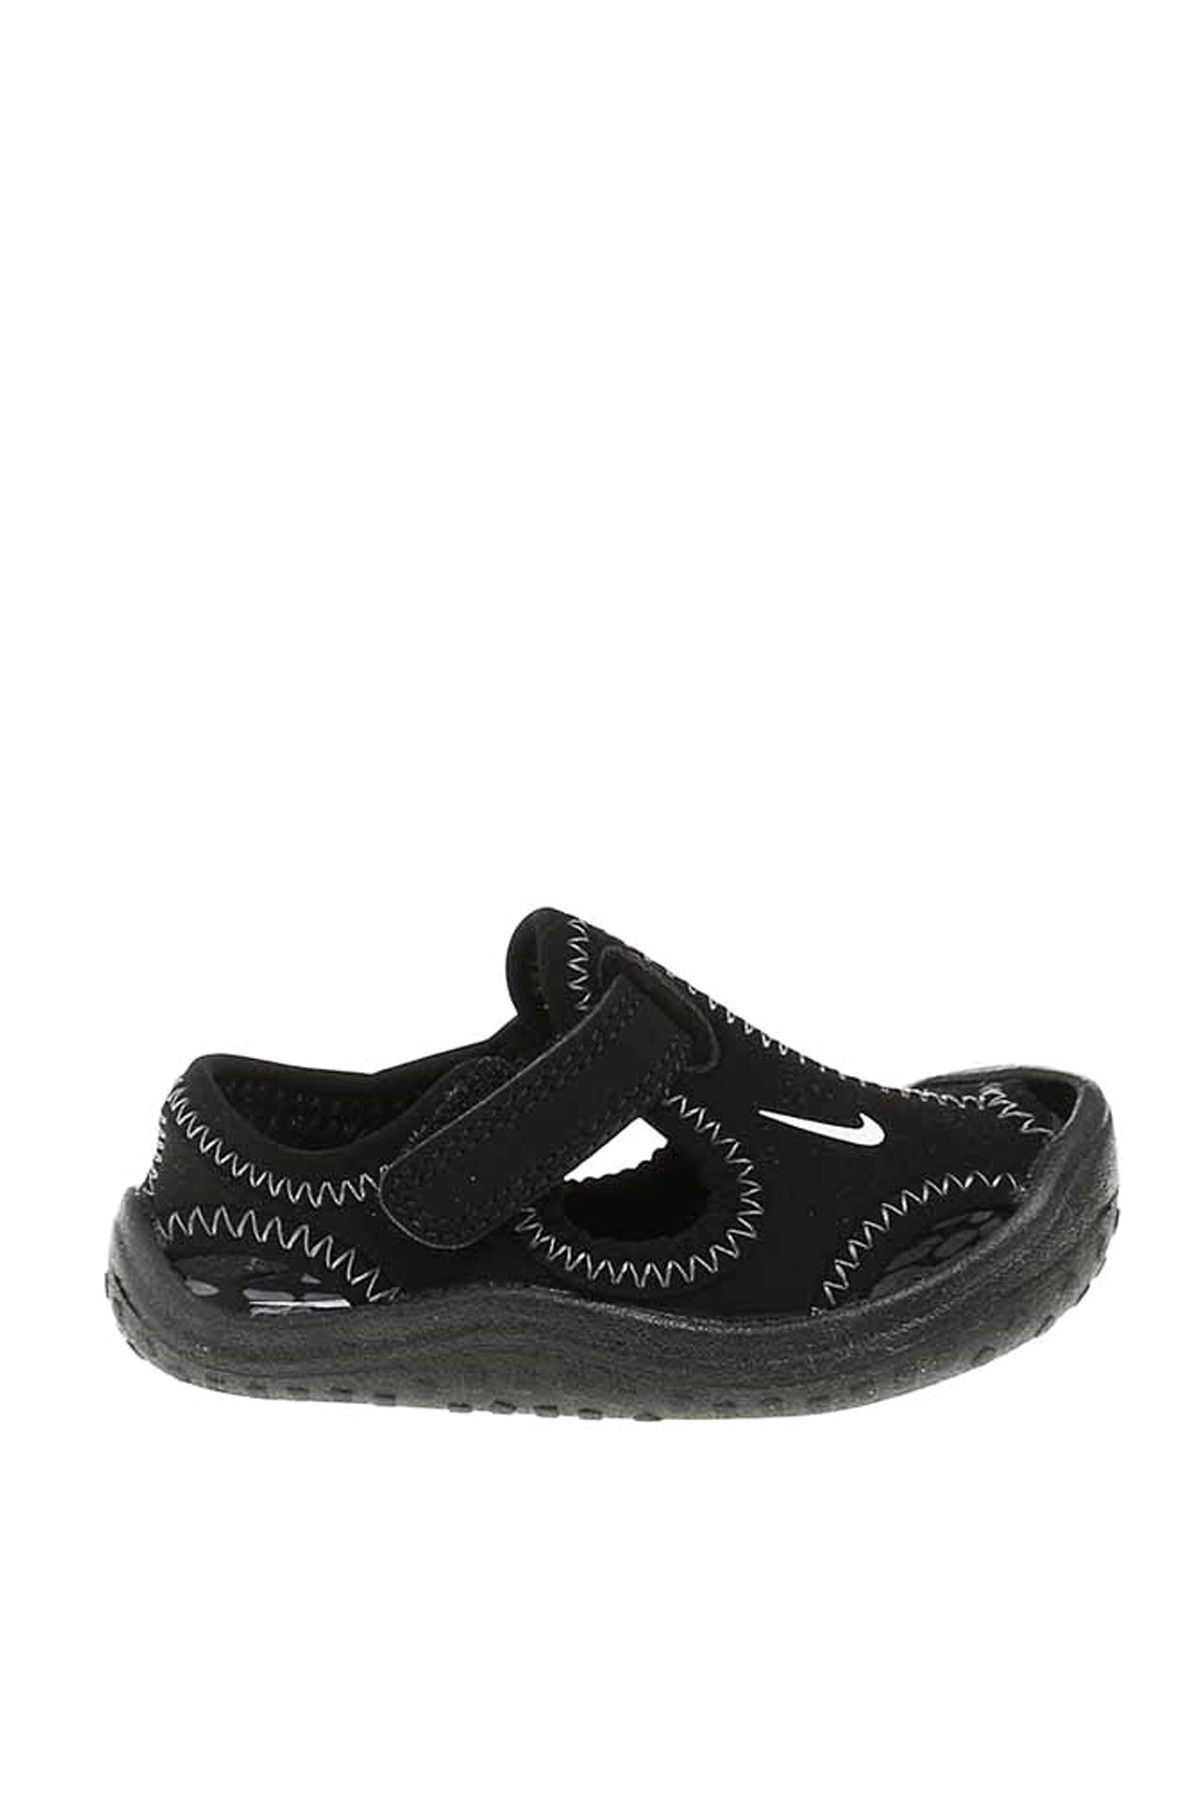 Nike Sunray Protect Td Erkek Sandalet Ayakkabı  - 903632-001